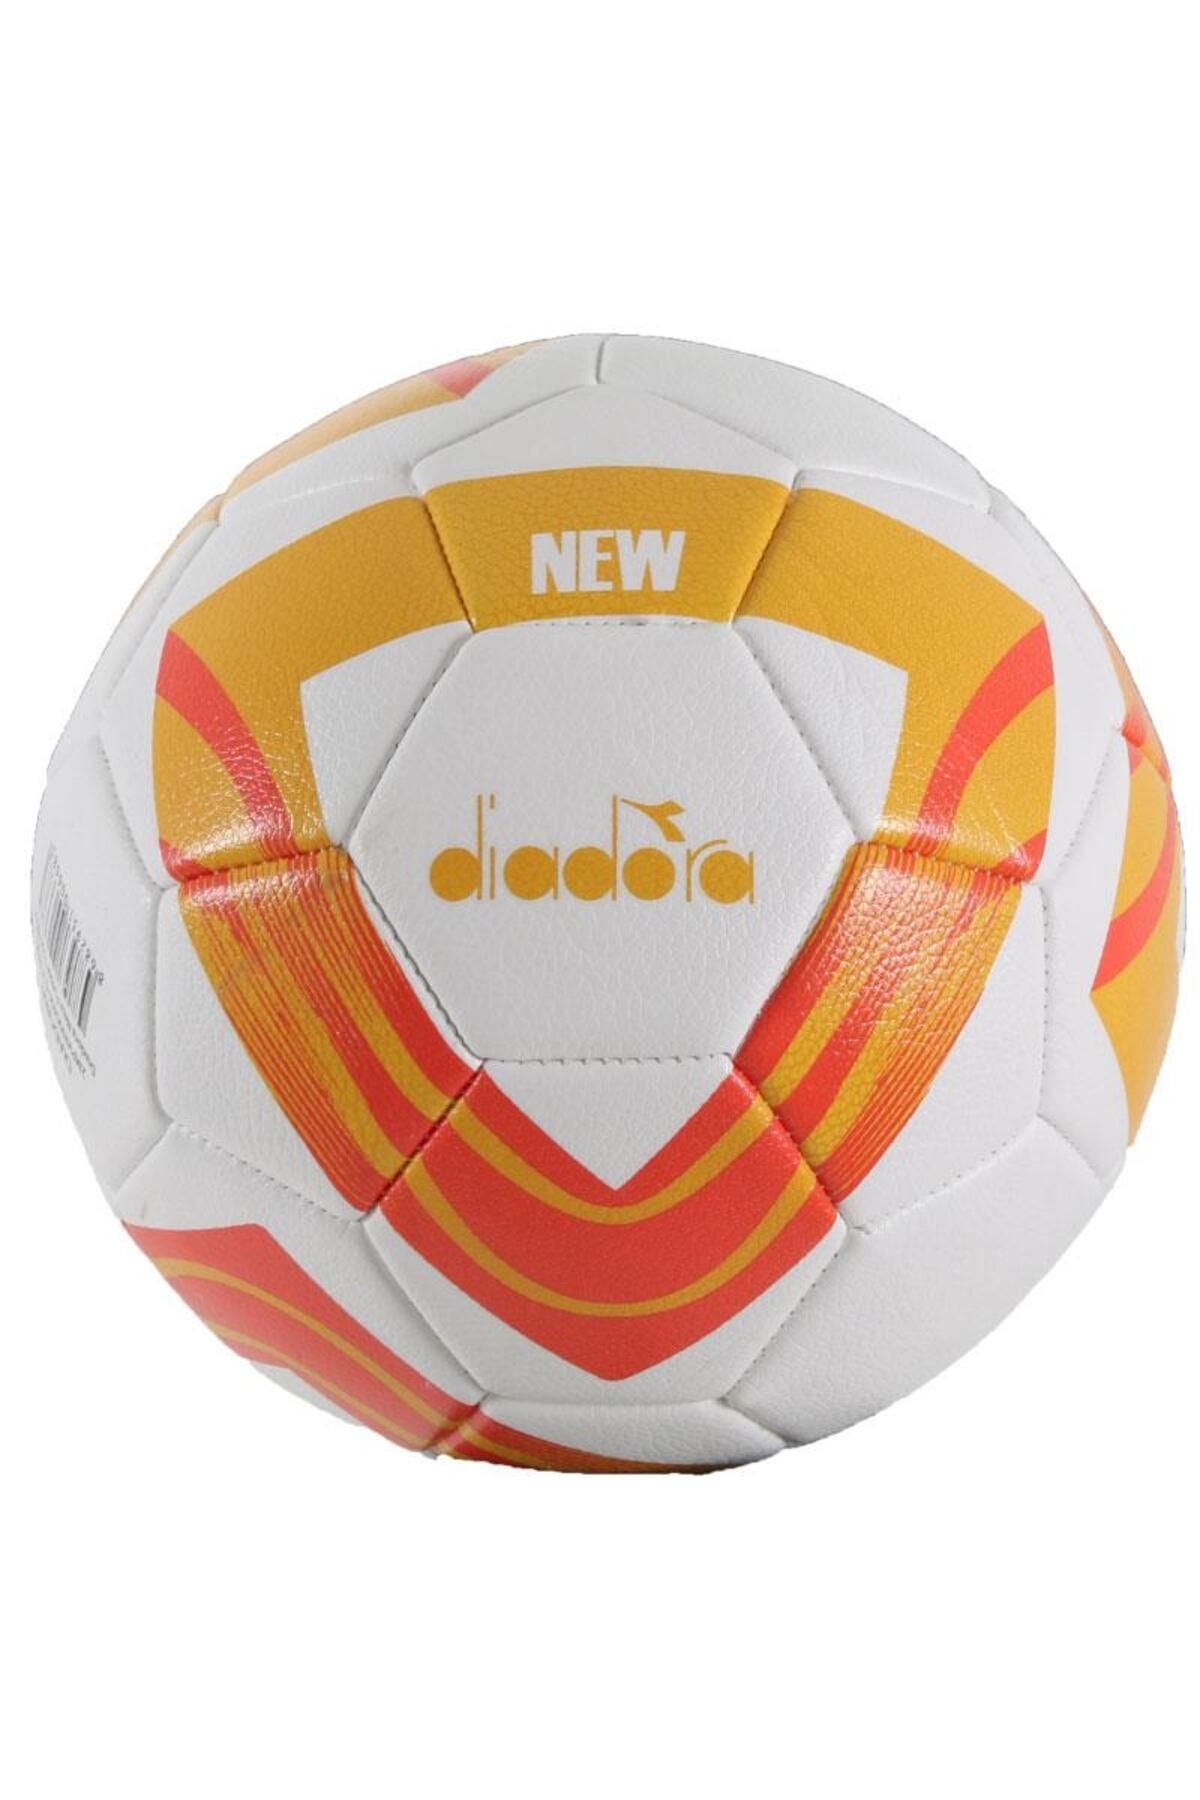 Diadora New Futbol Topu Beyaz - Turuncu - Siyah No 4